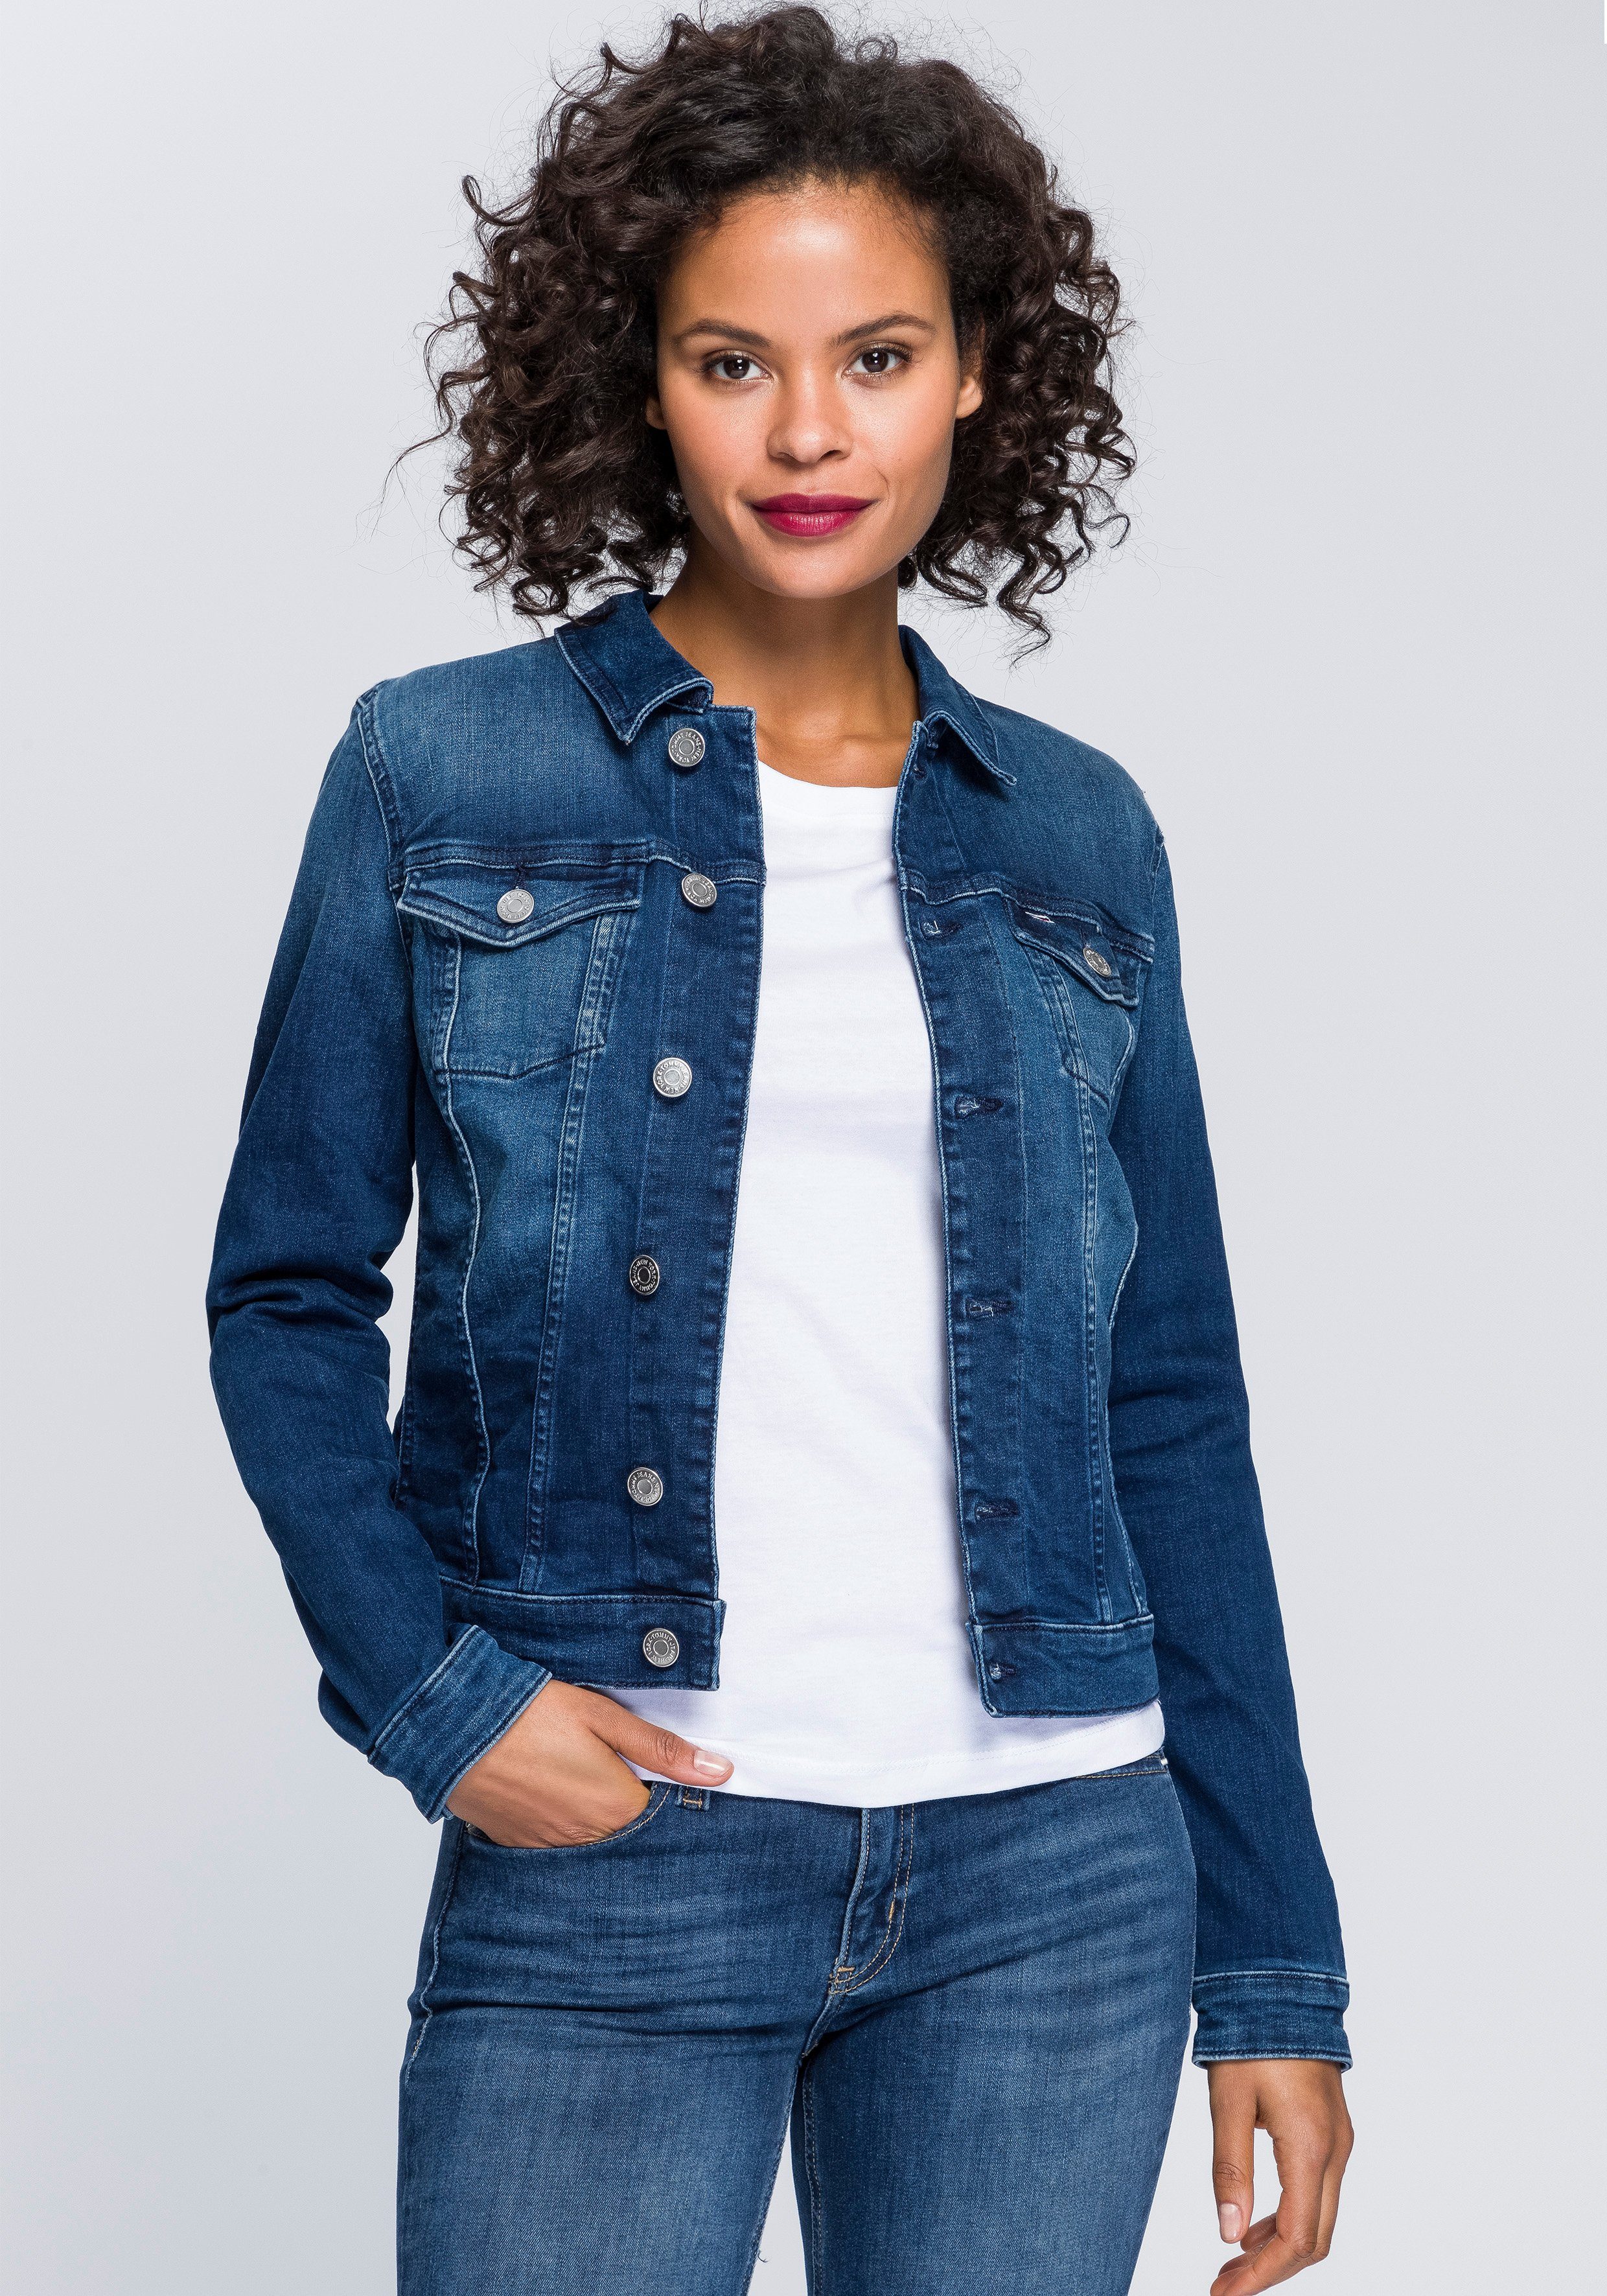 Tommy Jeans Jacken kaufen » Hilfiger Denim Jacken | OTTO